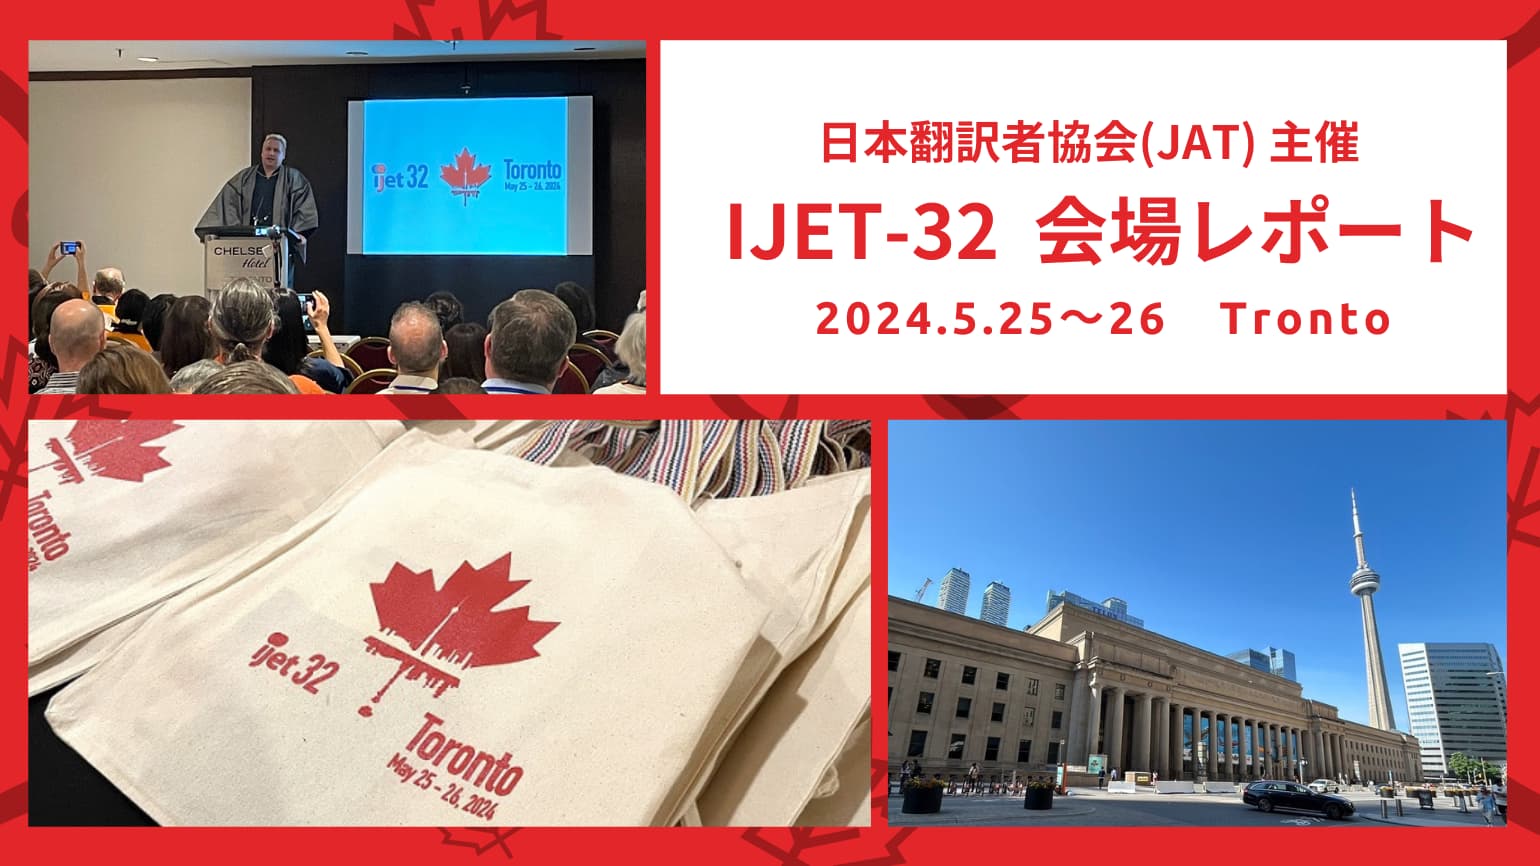 介绍在加拿大多伦多召开的IJET-32会场的情况！